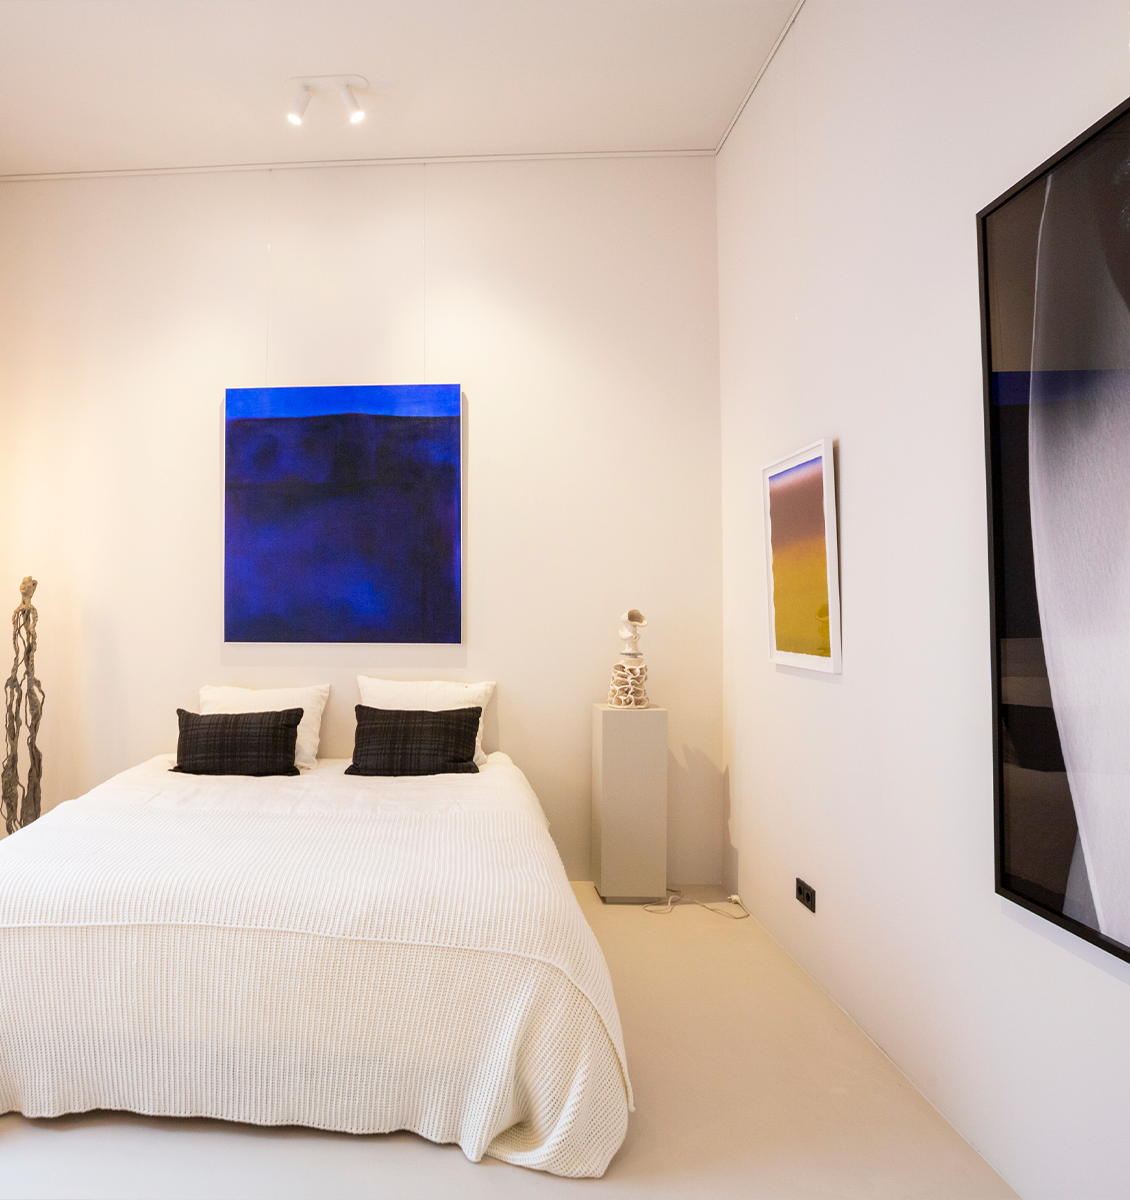 NL slaapkamer met kunstwerken aan muur groot blauw schilderij